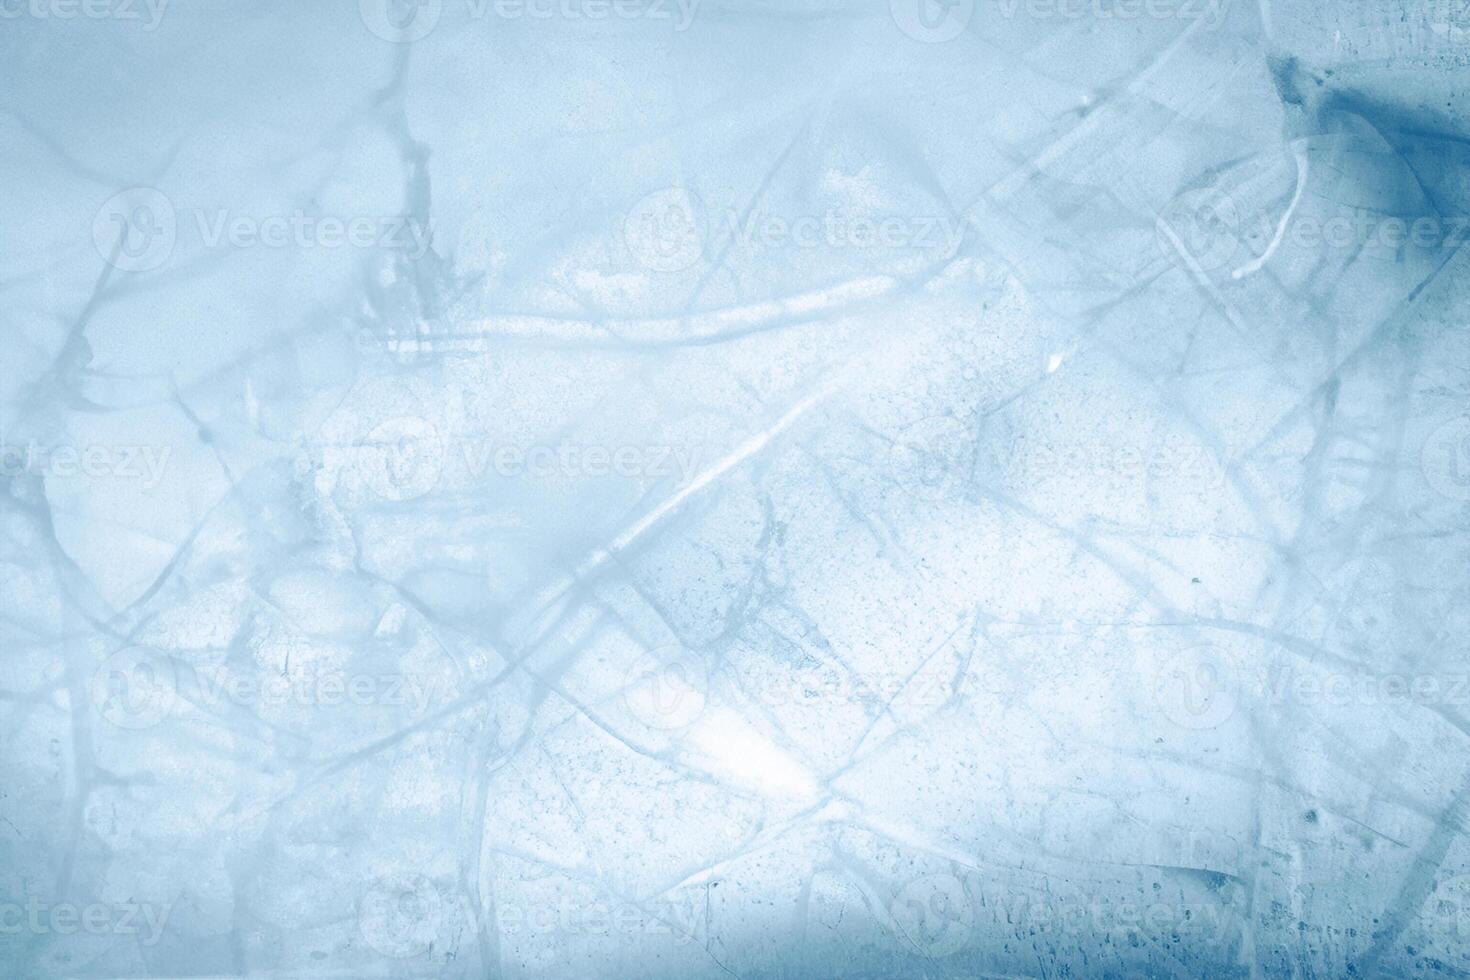 frysta fraktaler, knäckt blå is textur foto